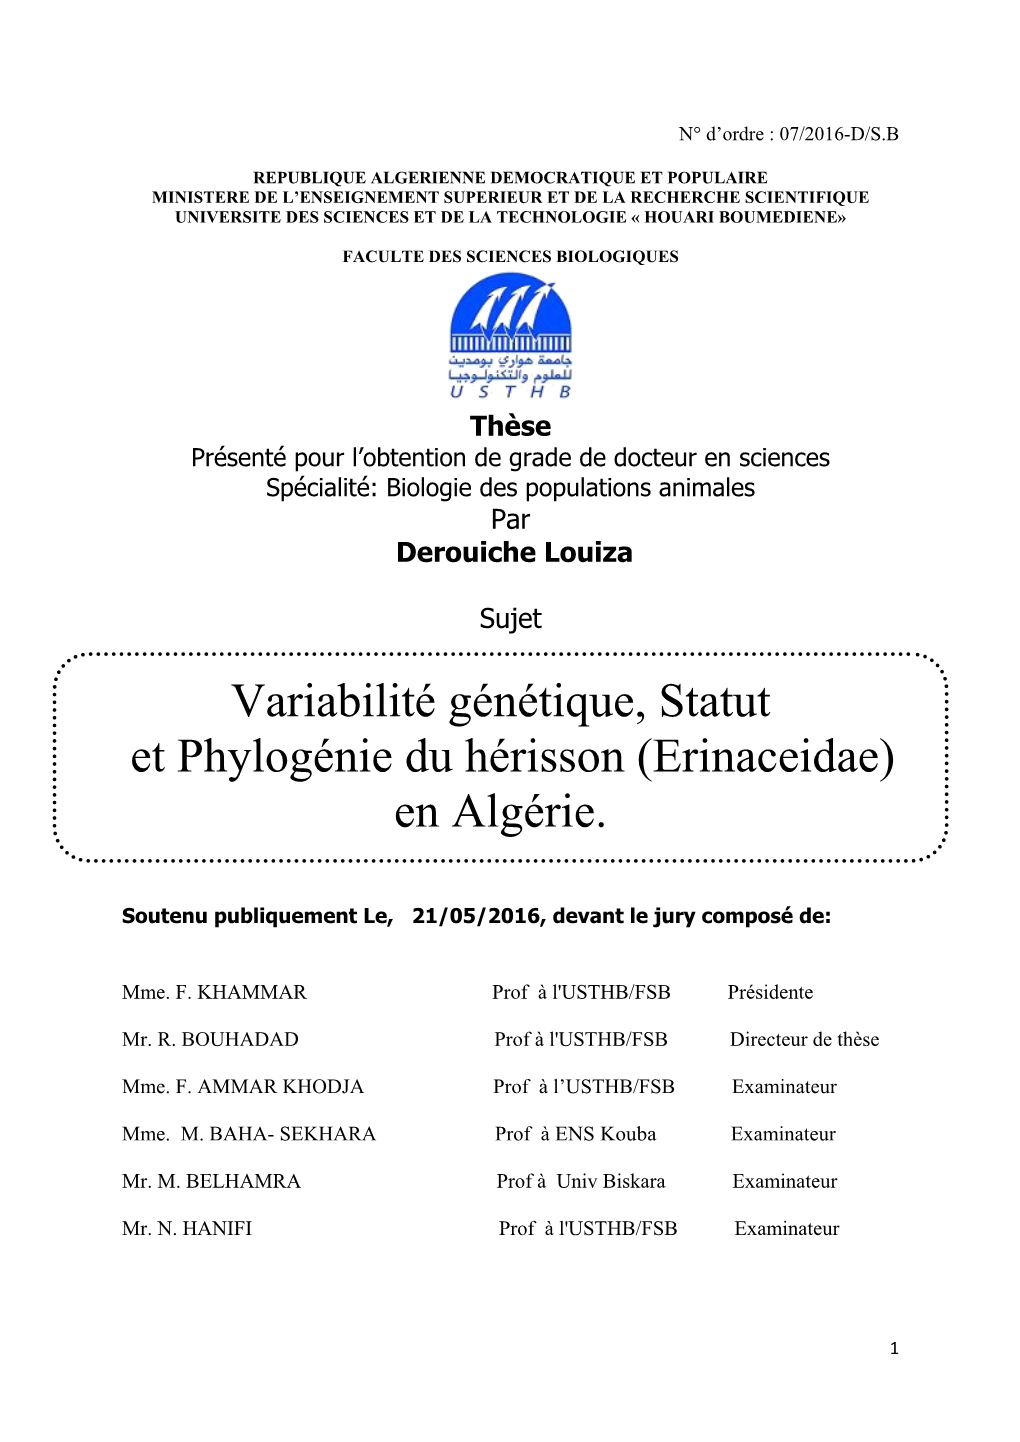 Variabilité Génétique, Statut Et Phylogénie Du Hérisson